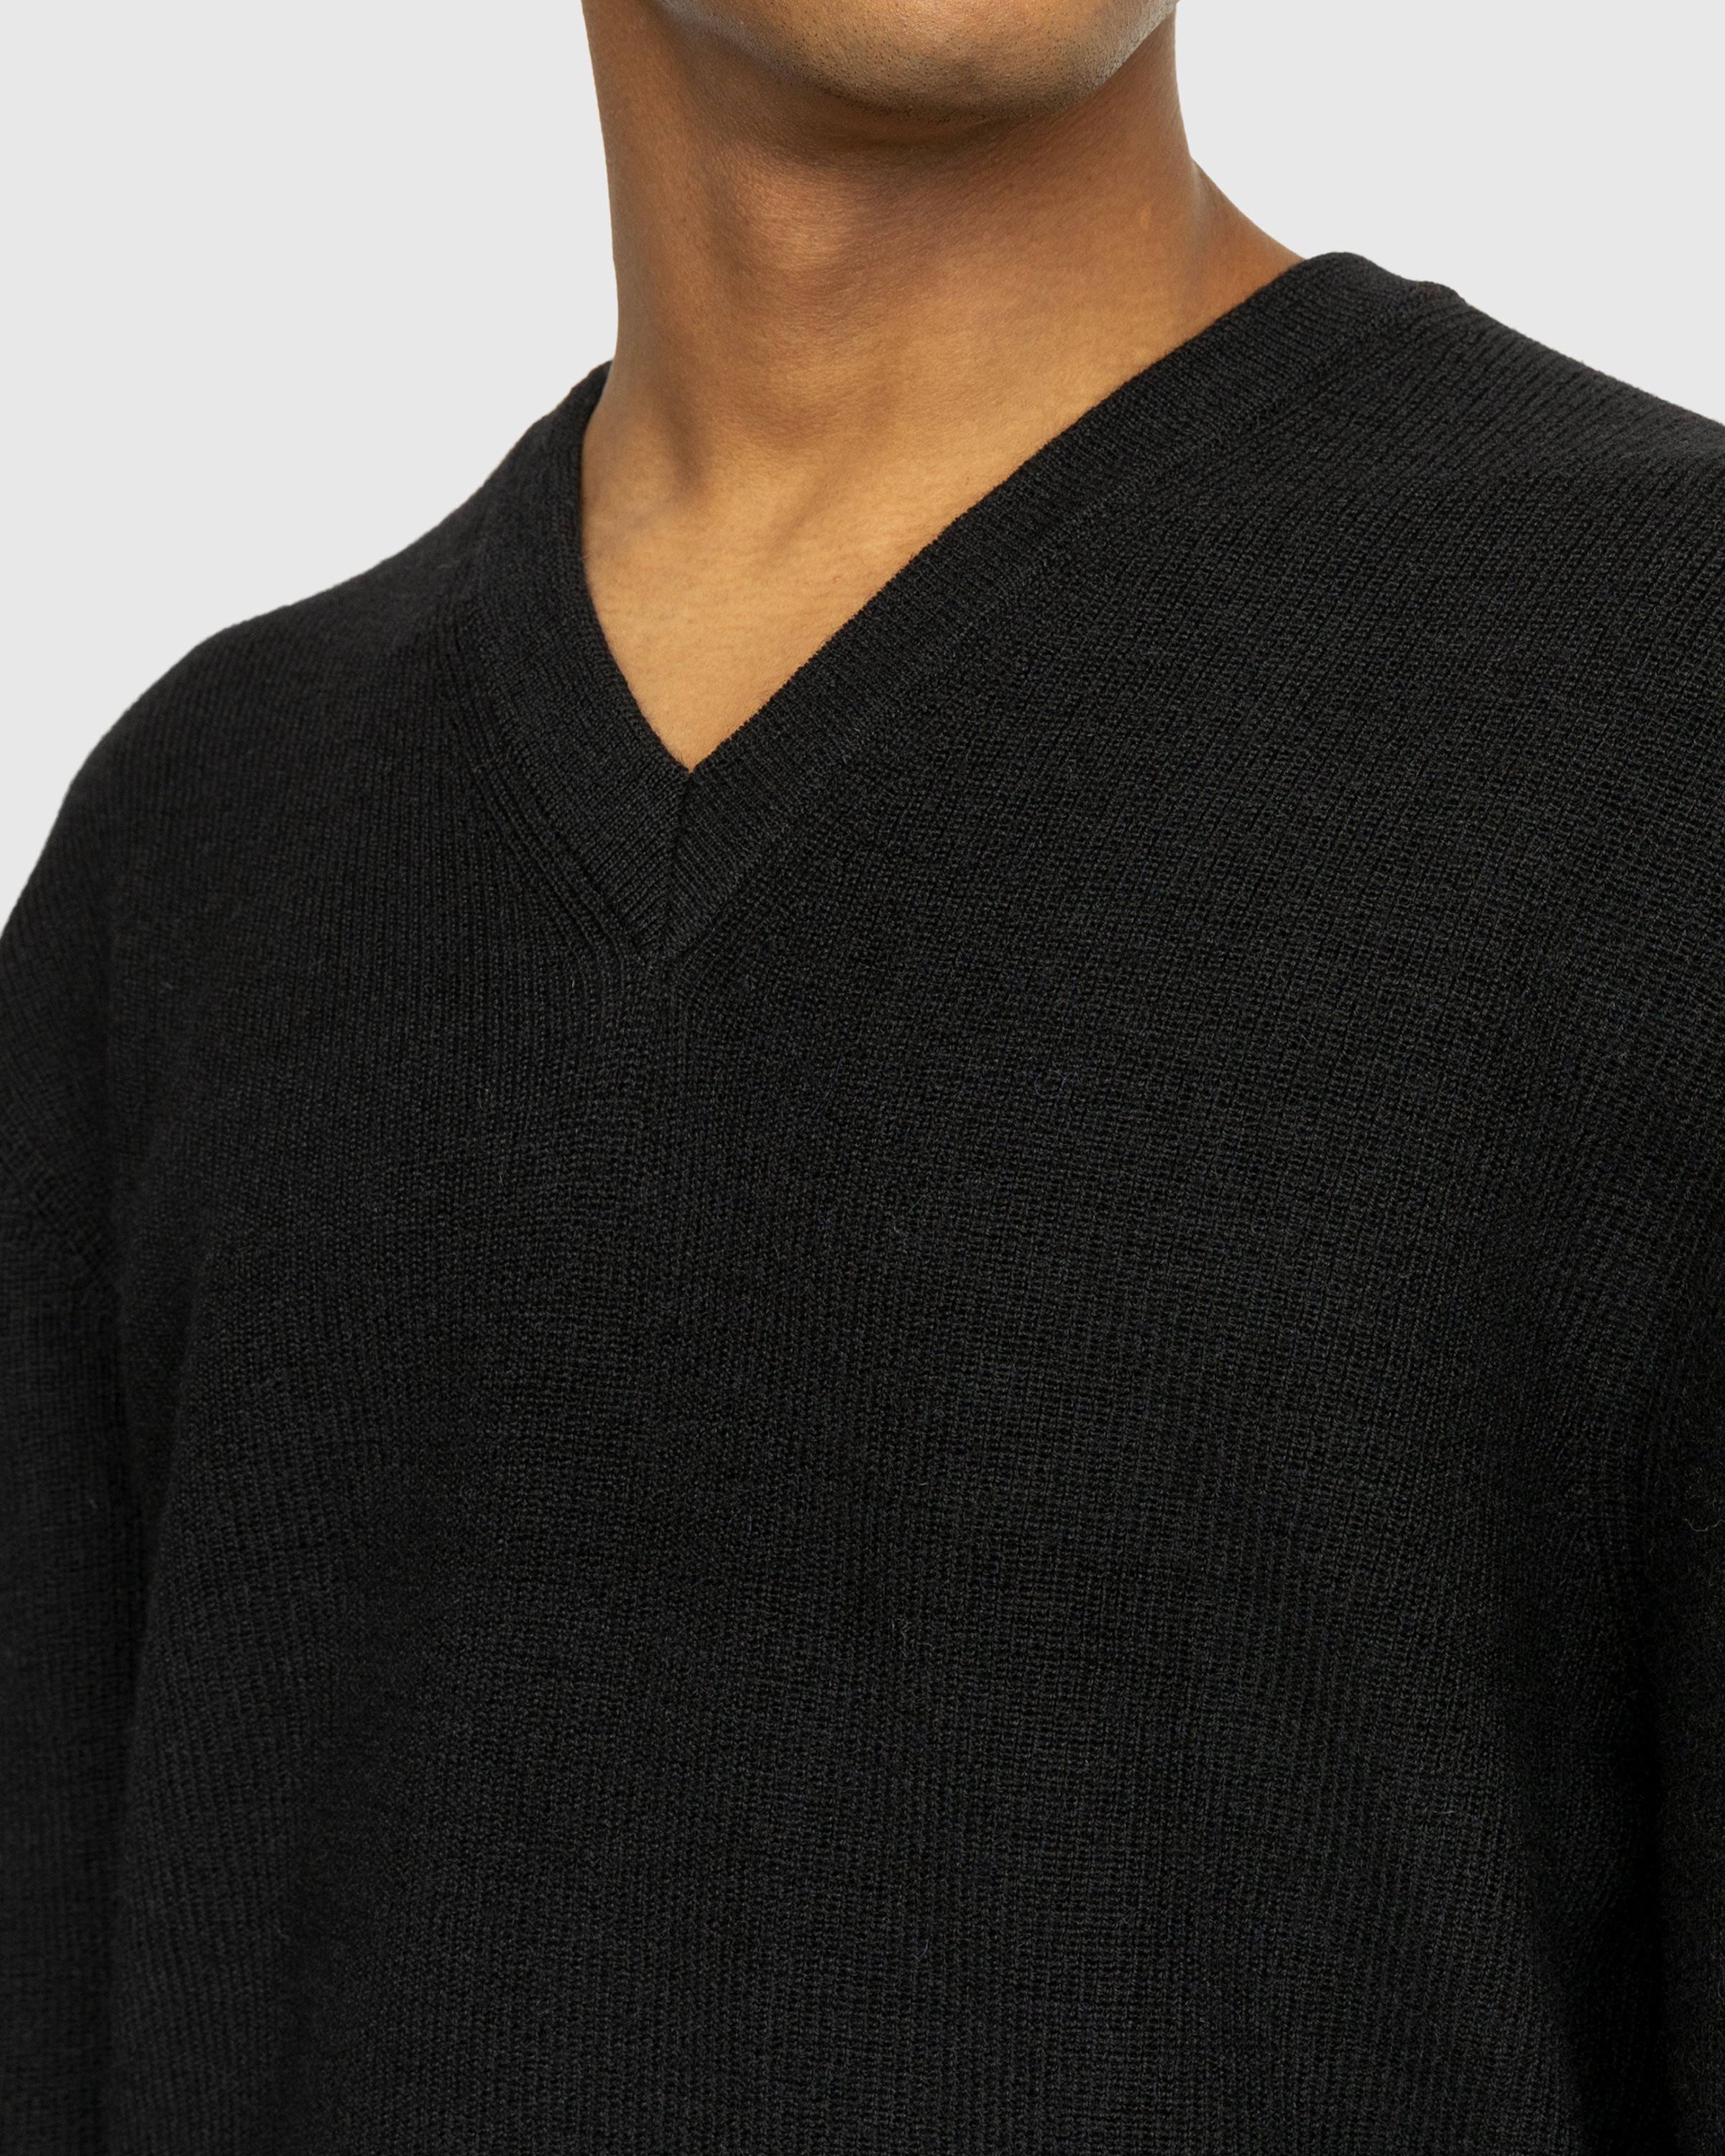 Lemaire - V Neck Sweater Black - Clothing - Multi - Image 6